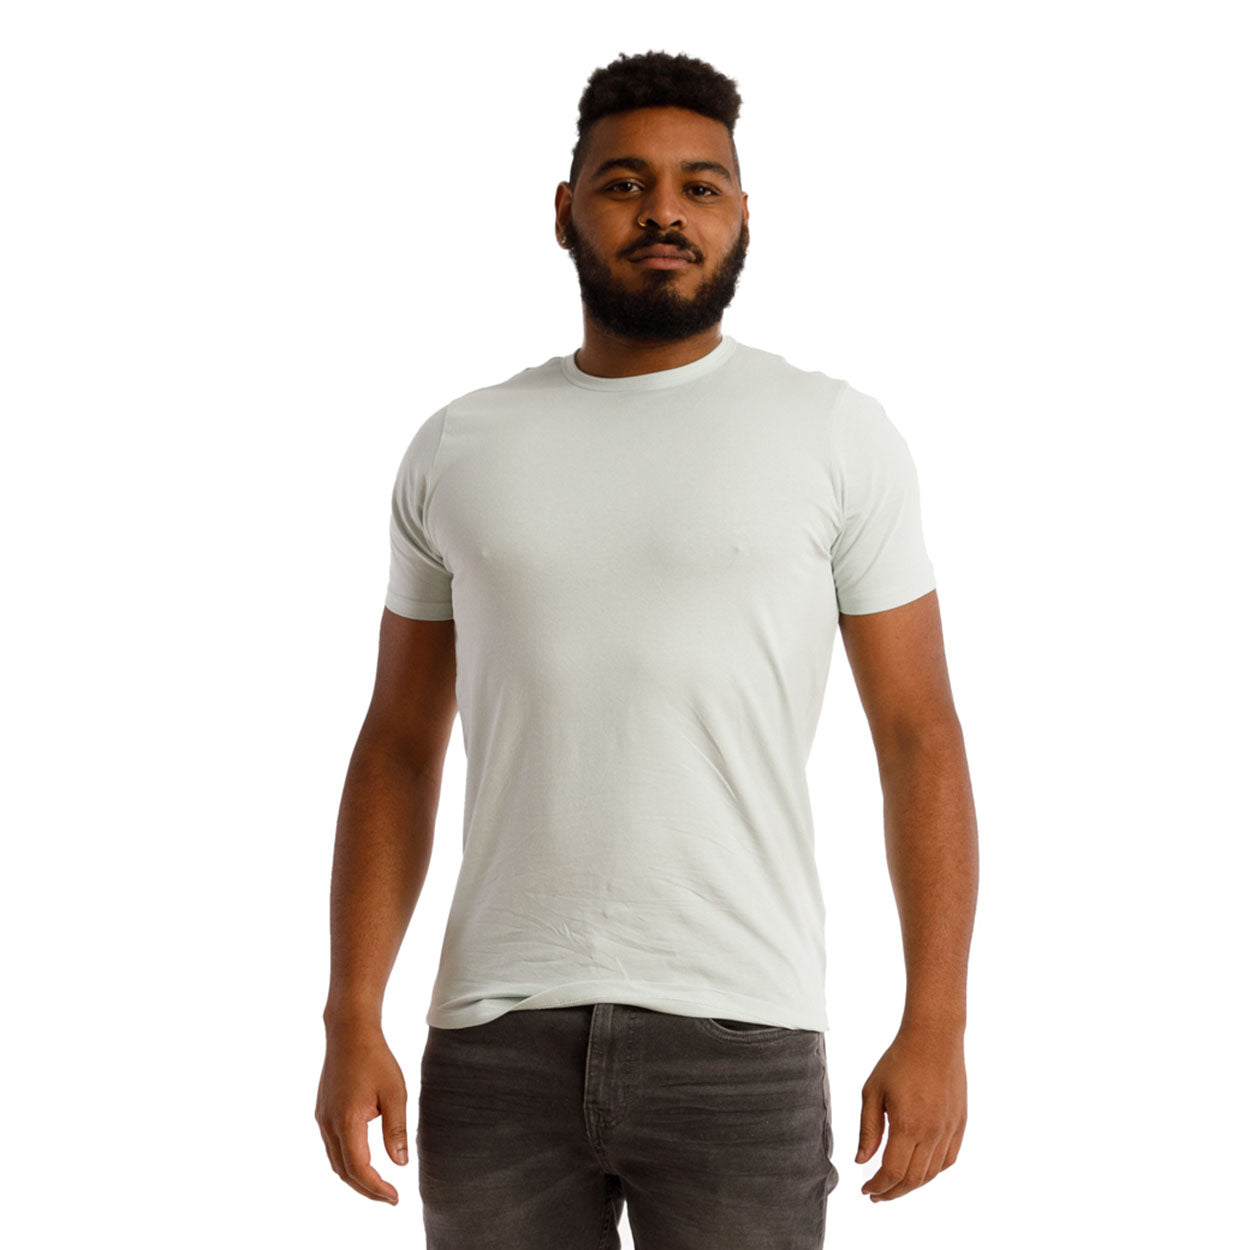 158c T-shirt long en coton pour femme: en vente à 19.99€ sur